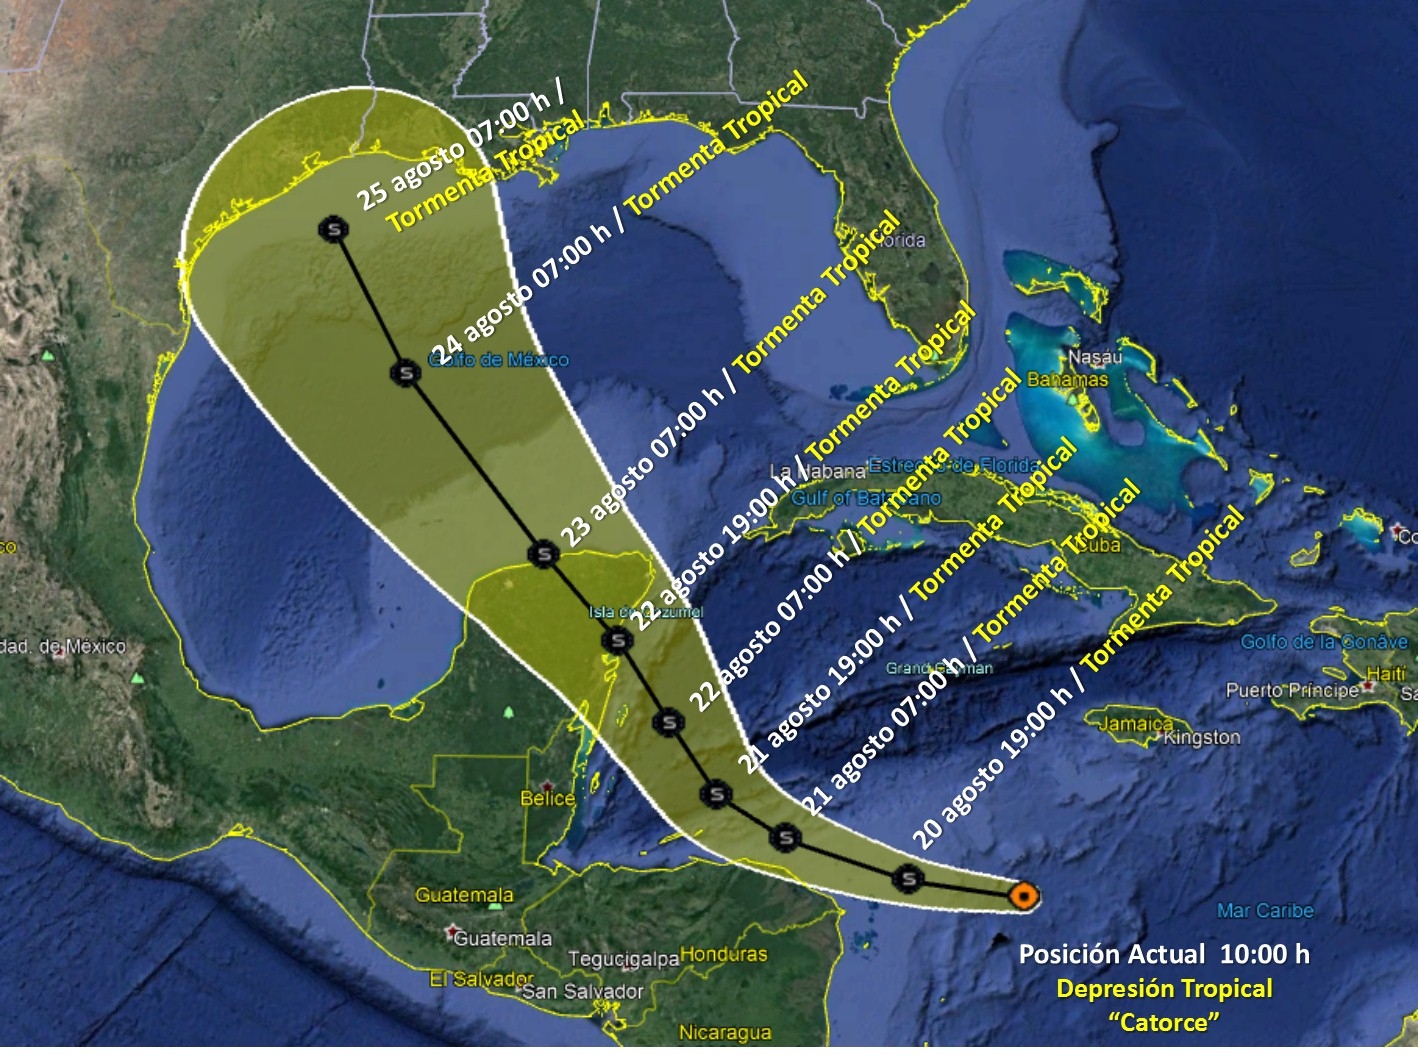 Sigue la EN VIVO la trayectoria de la Tormenta Tropical 14 que afectará